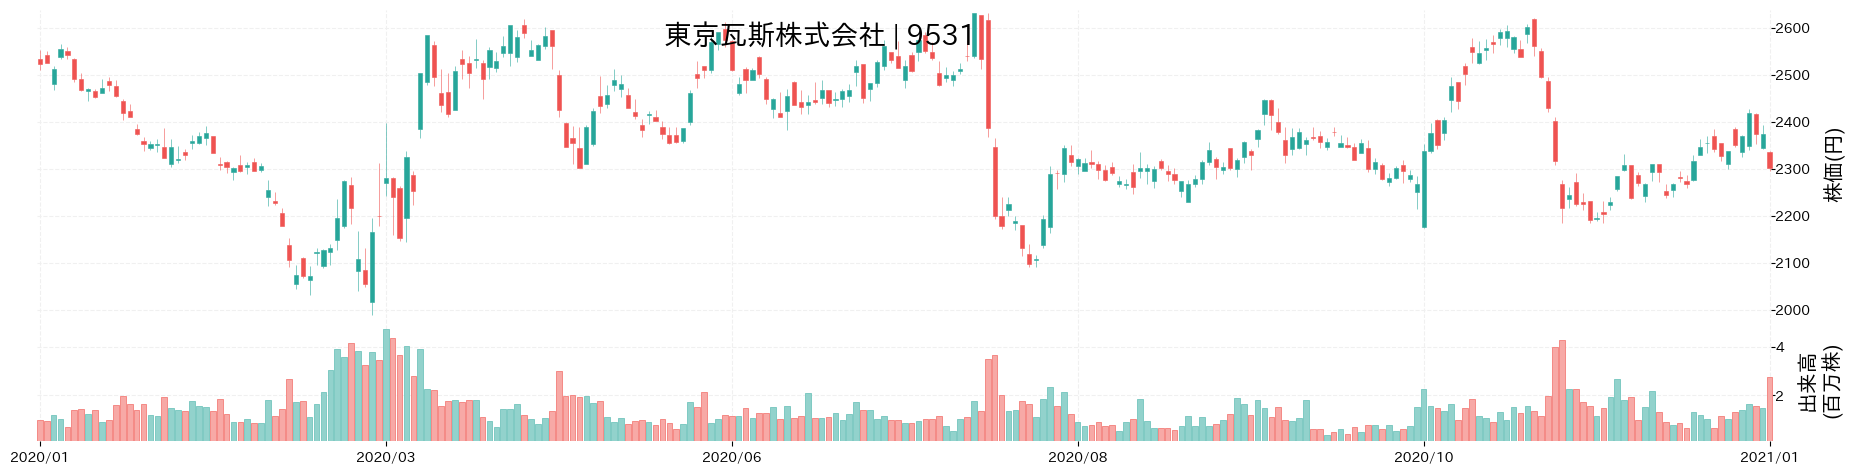 東京瓦斯の株価推移(2020)